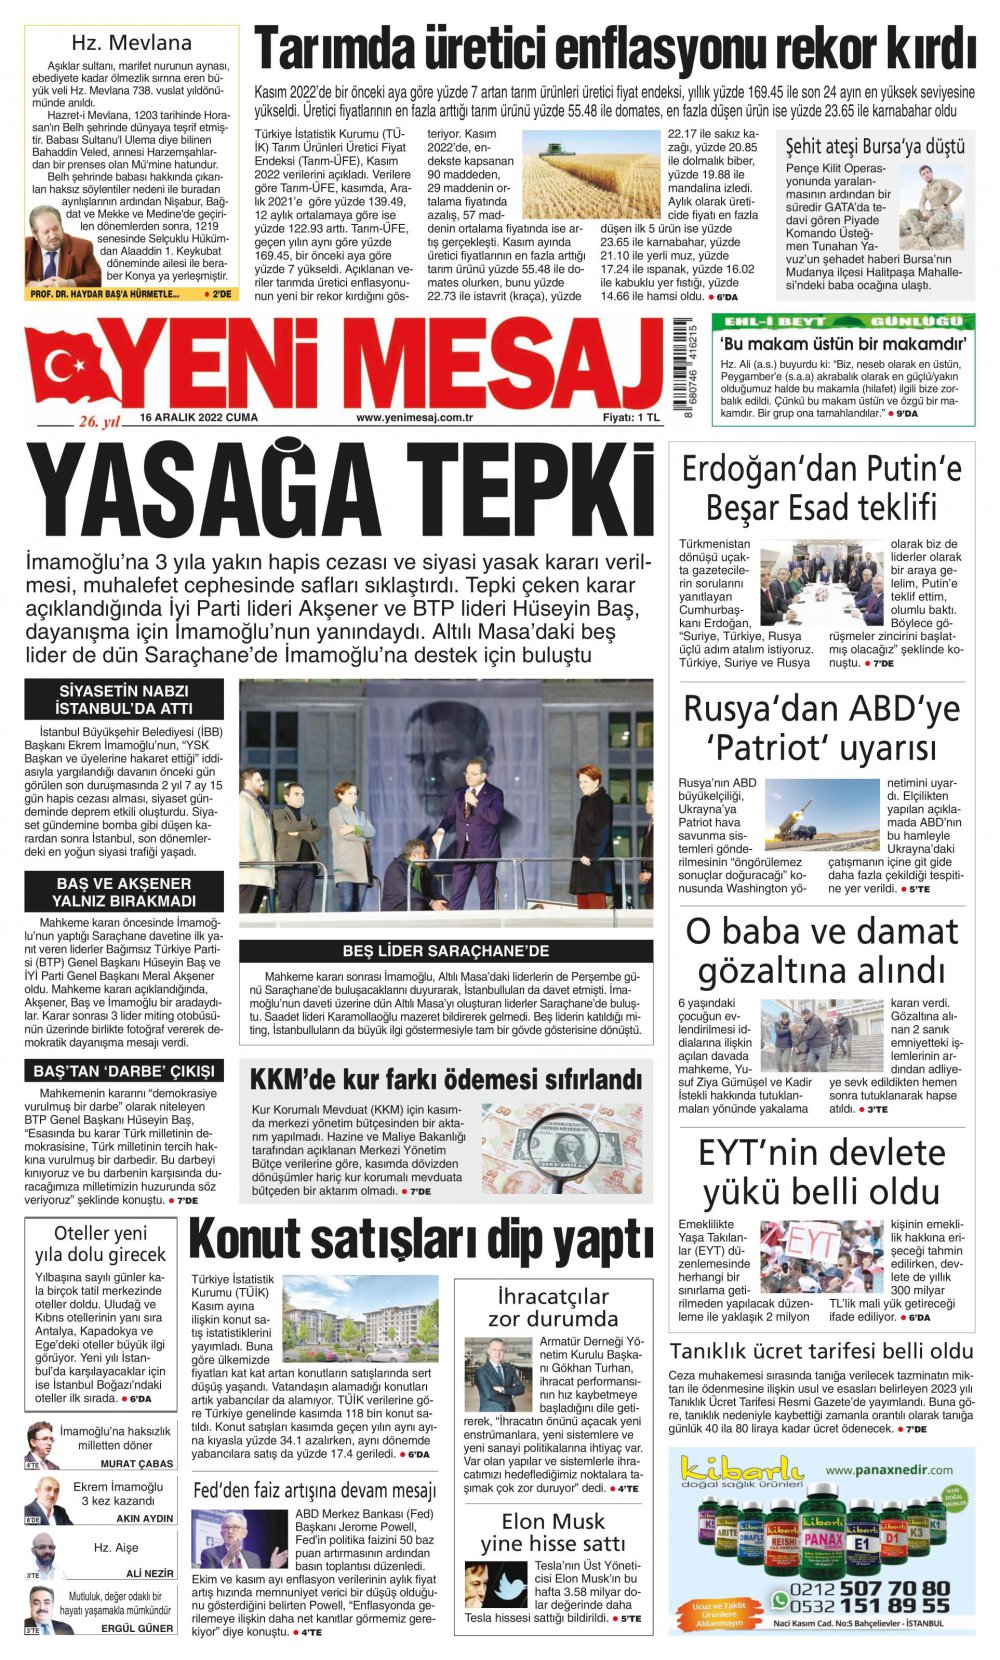 Yeni Mesaj Gazete Keyfi - Gazete Manşetleri ve 1. sayfaları - Gazete oku (16 Aralık 2022 Cuma)